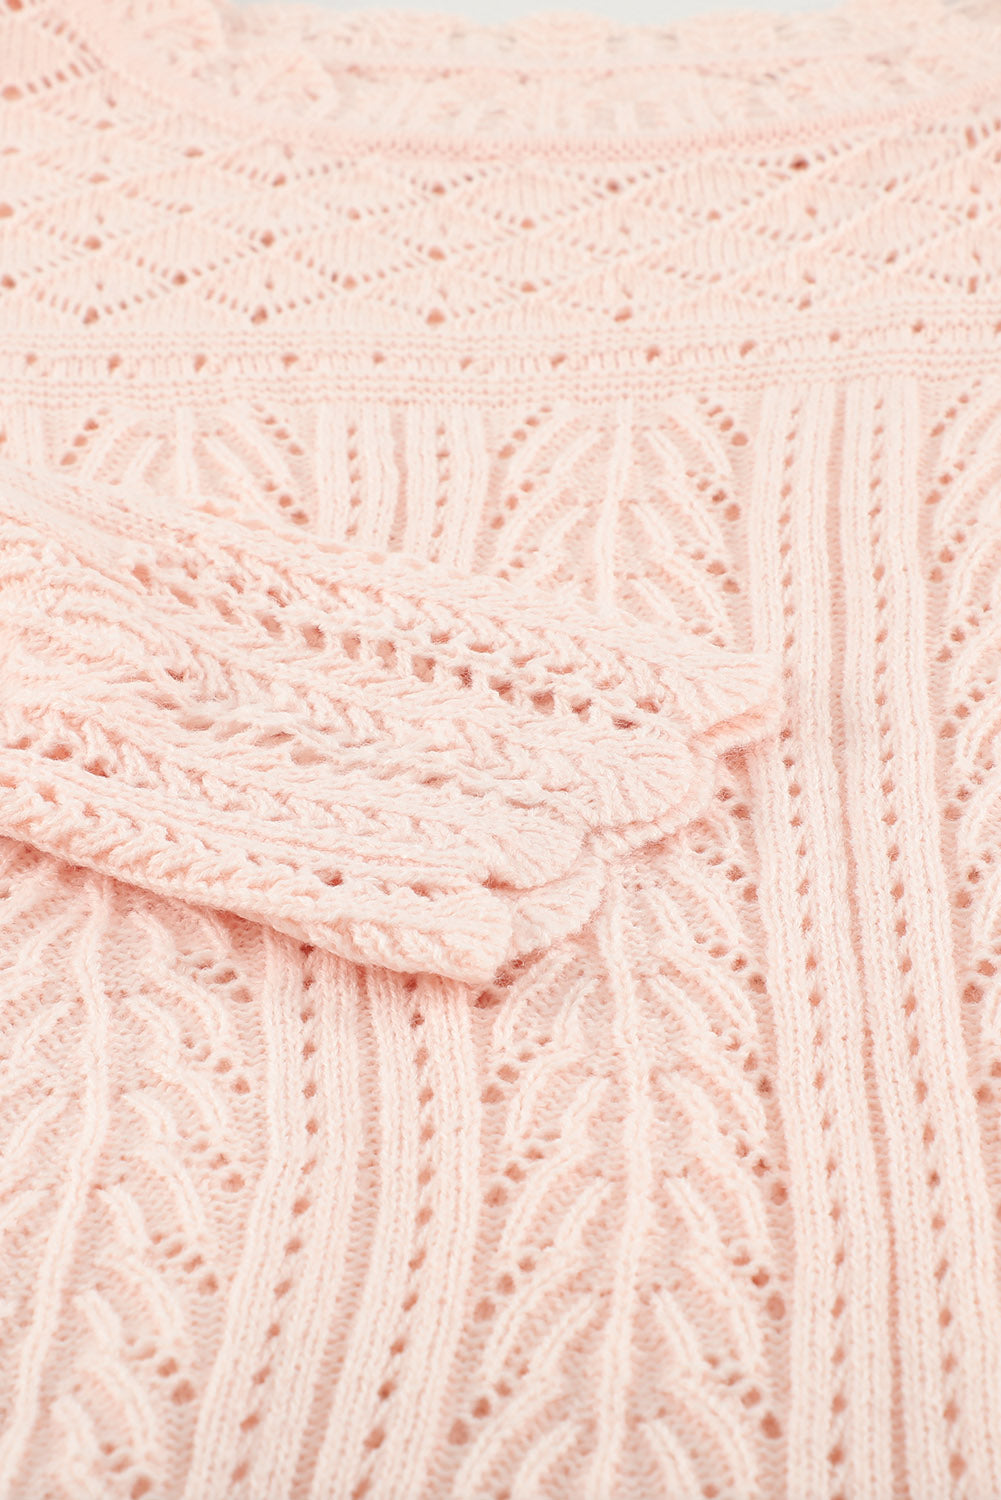 Maglione lavorato a maglia con spalle cadenti tinta unita rosa